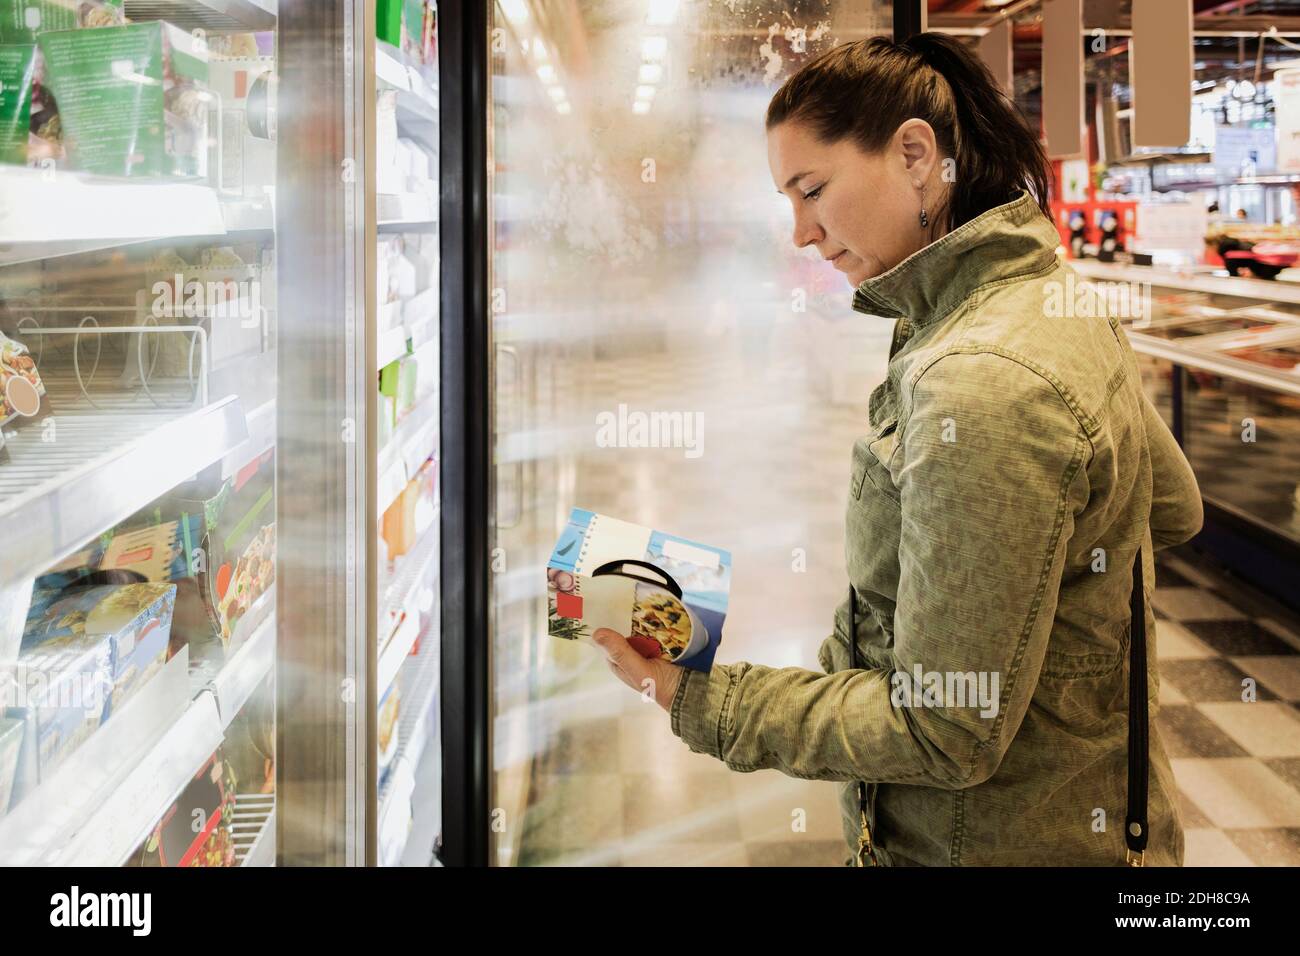 Vista laterale della donna che legge l'etichetta del cibo nella sezione refrigerata Foto Stock